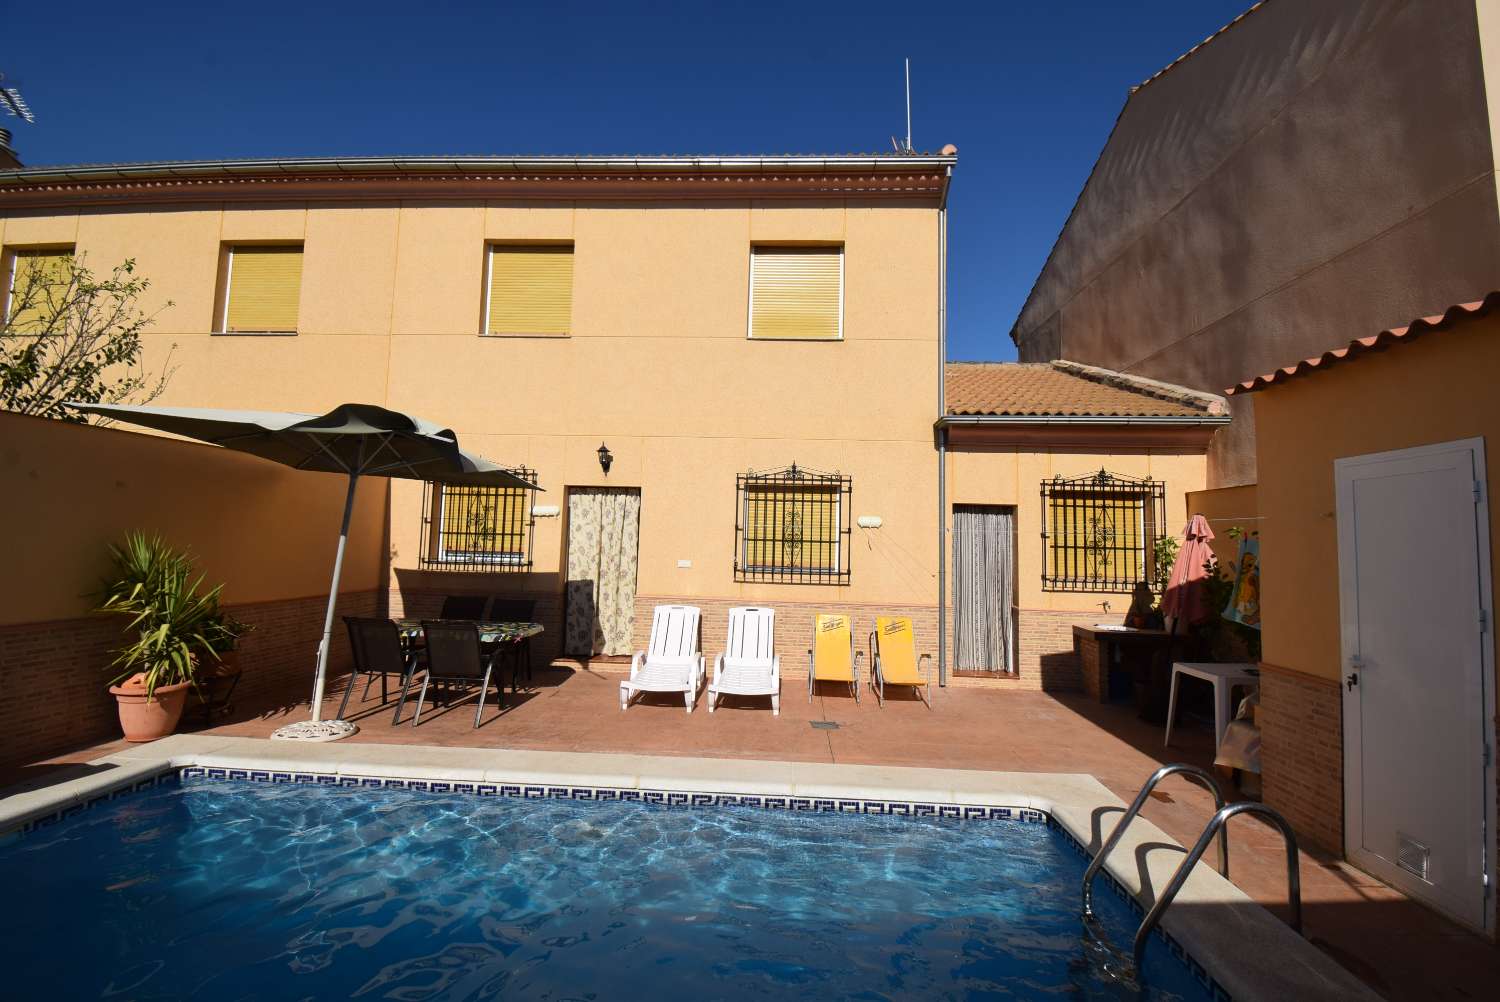 Fantastisk rækkehus med solrig terrasse og privat pool